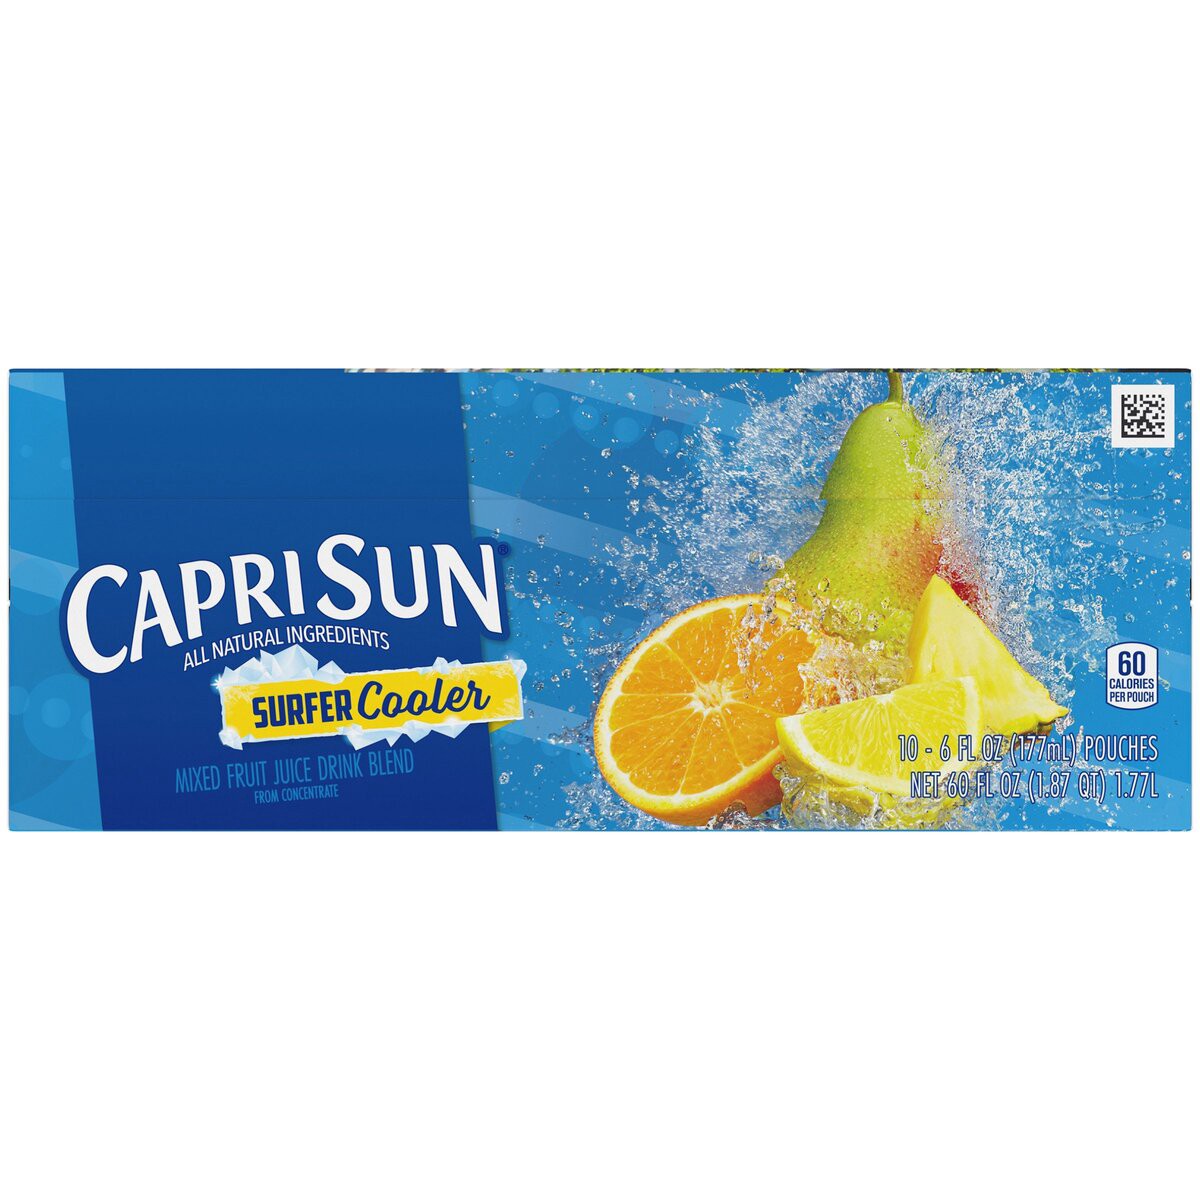 slide 5 of 8, Capri Sun Surfer Cooler Juice Drink - 10 ct; 6 fl oz, 10 ct; 6 fl oz